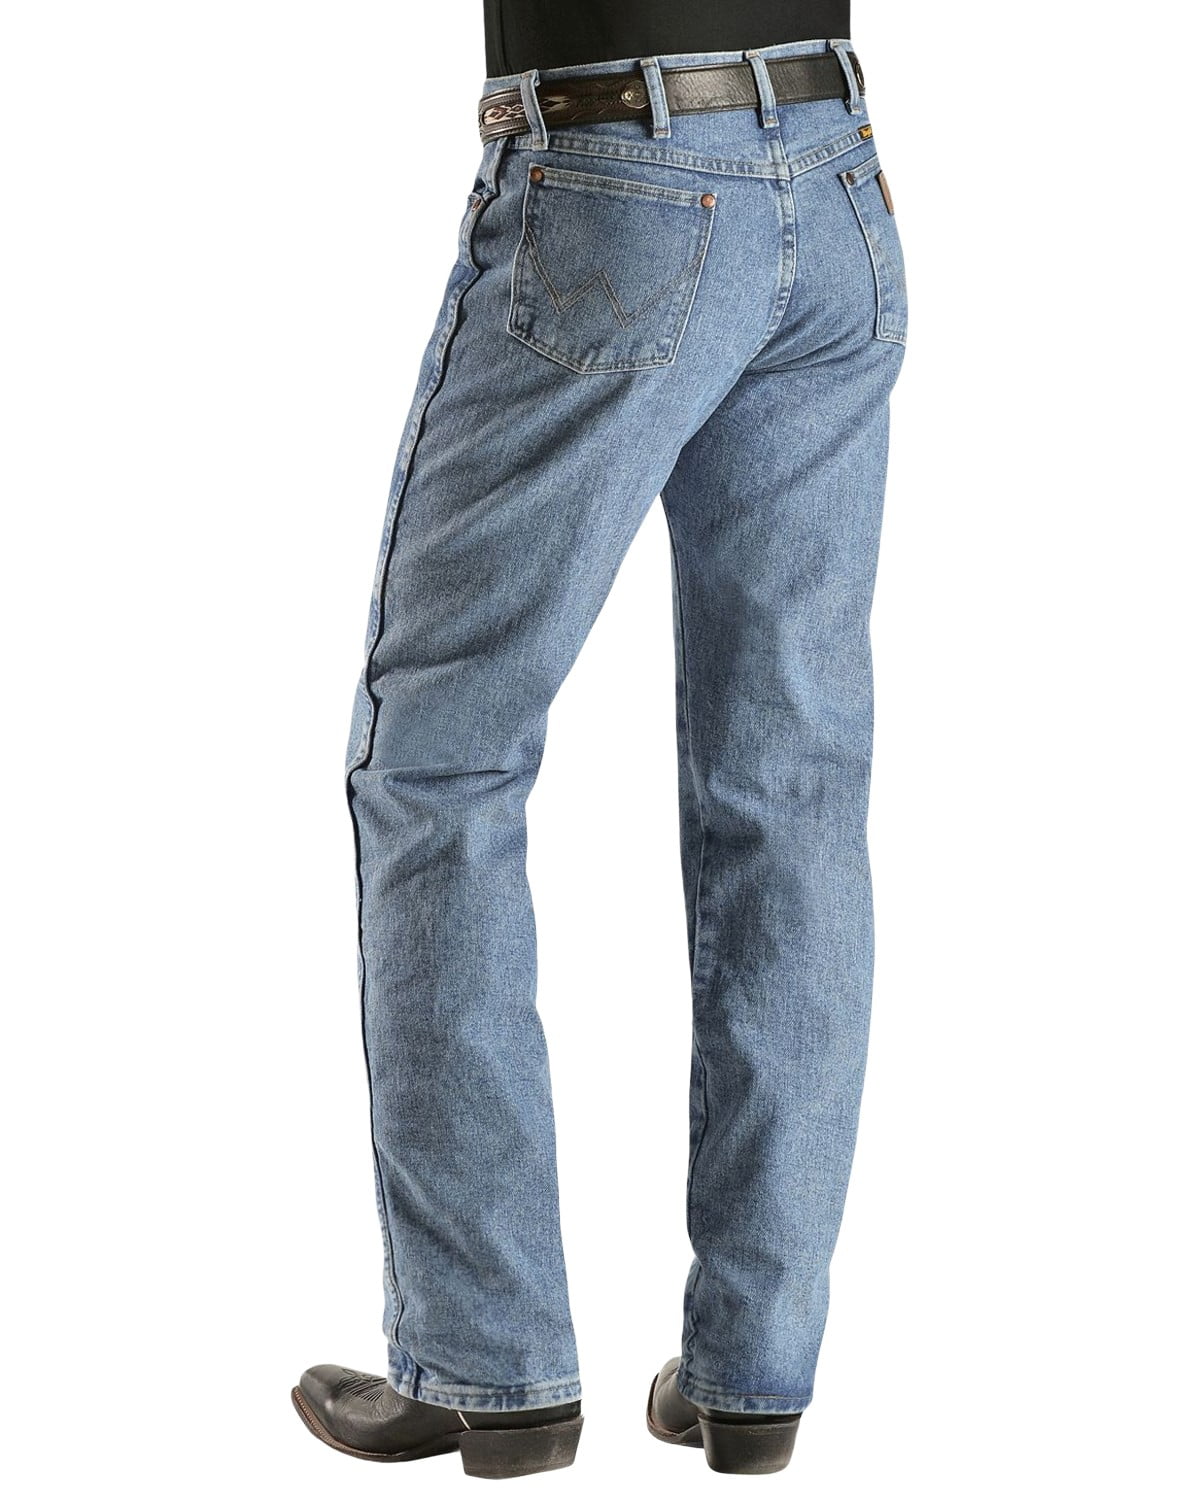 Wrangler Men's 13Mwz Jeans Cowboy Cut Original Fit Prewashed Antique ...